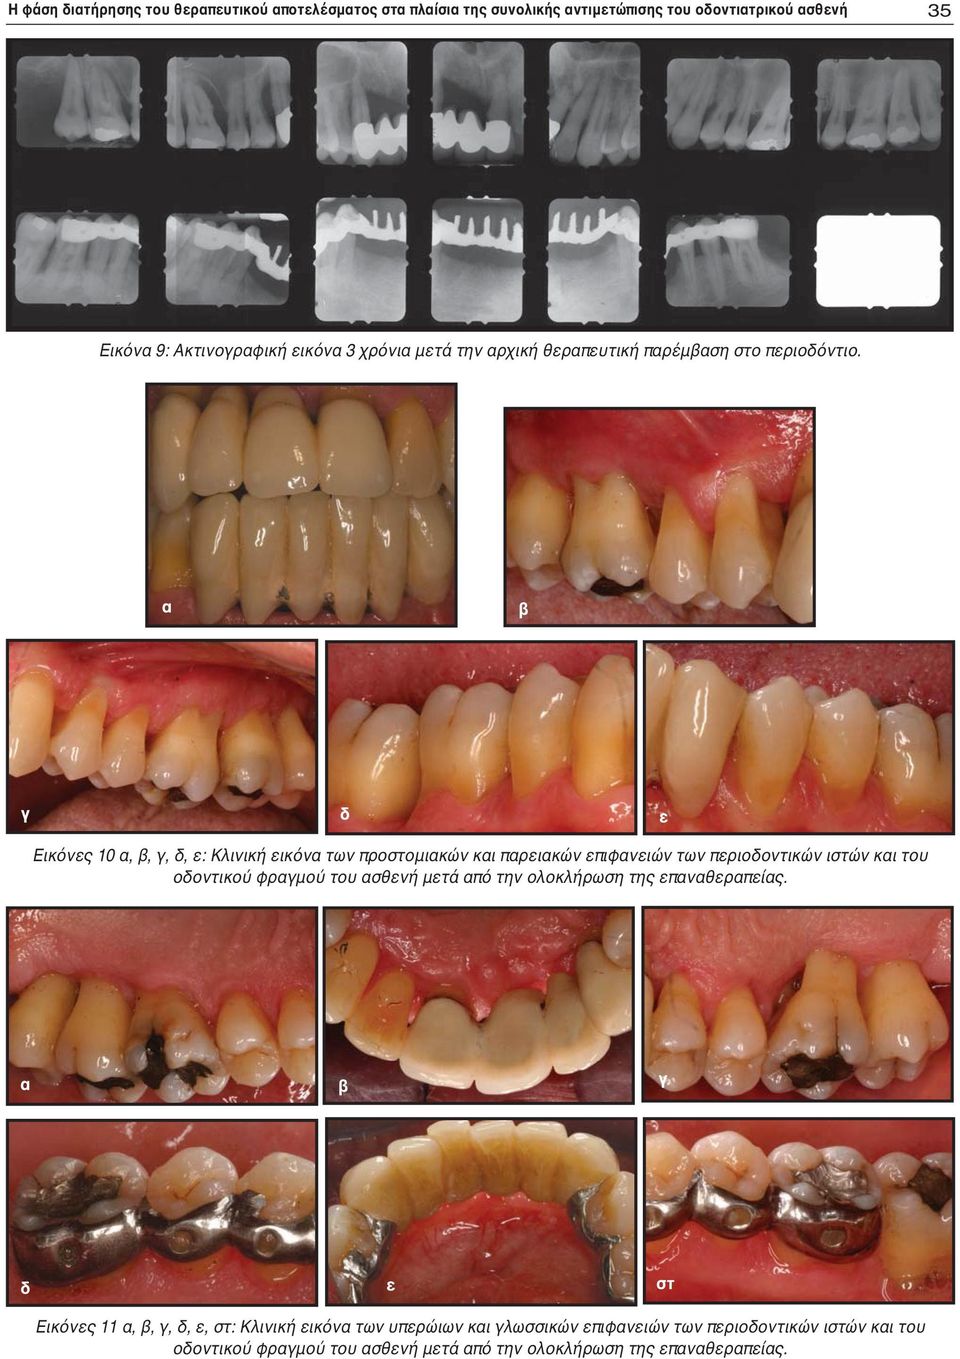 α β γ δ ε Εικόνες 10 α, β, γ, δ, ε: Κλινική εικόνα των προστομιακών και παρειακών επιφανειών των περιοδοντικών ιστών και του οδοντικού φραγμού του